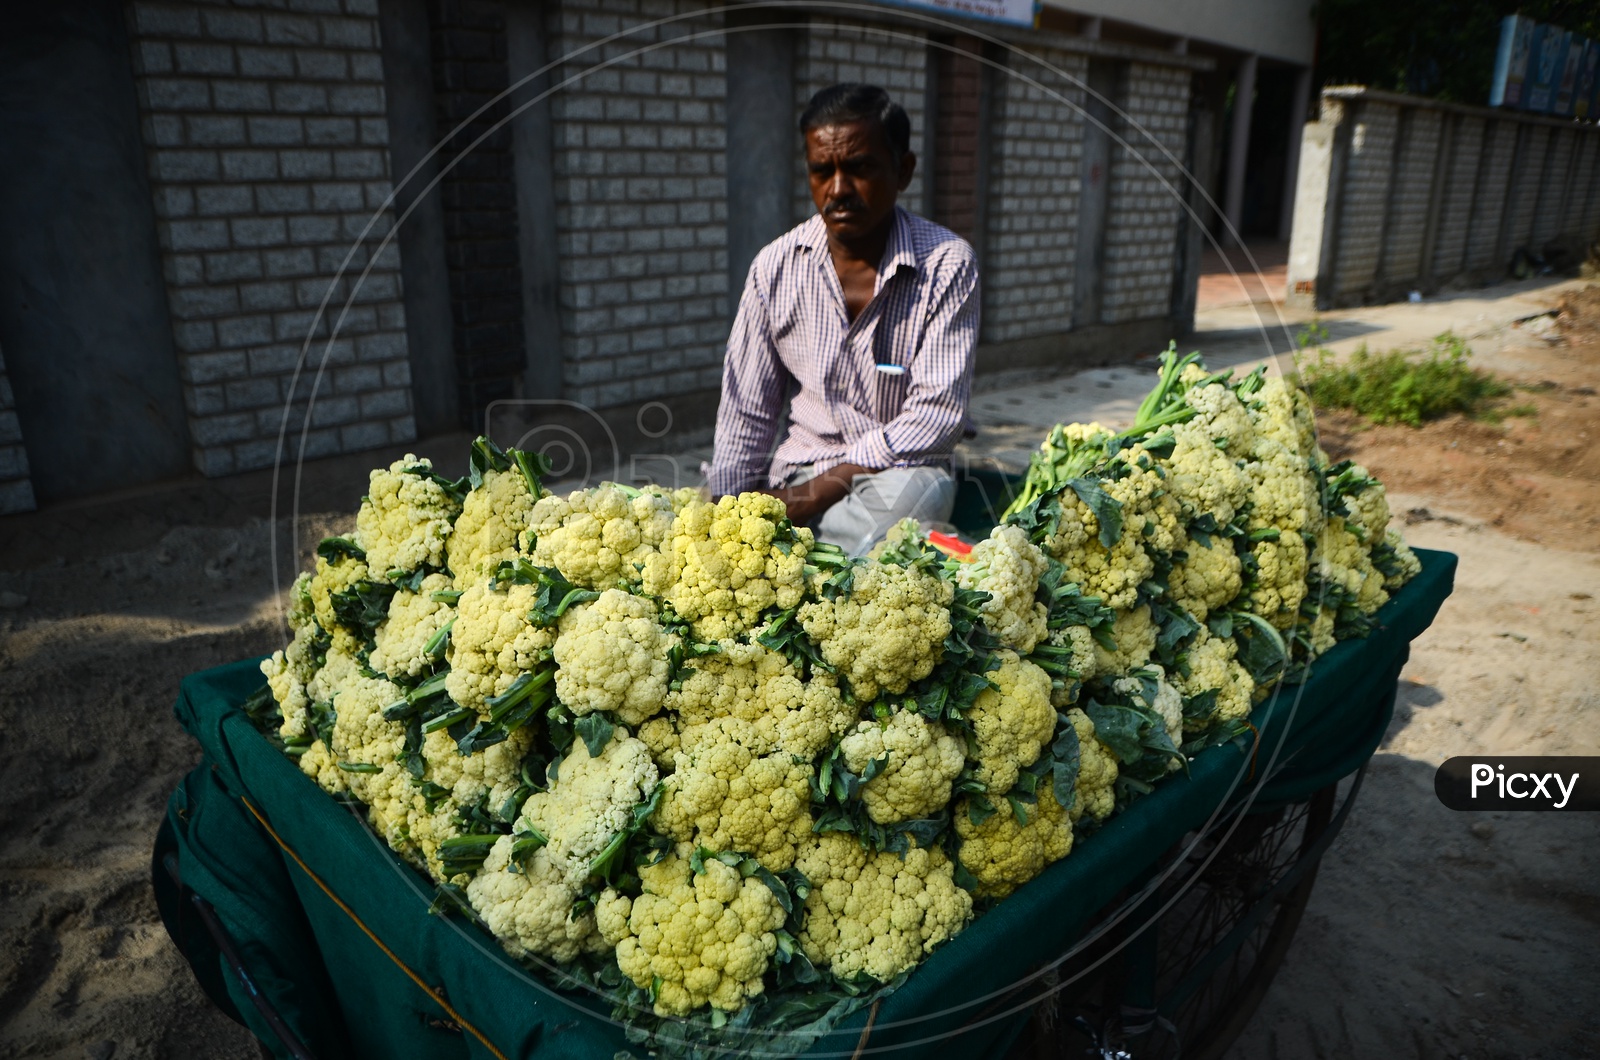 Street vendor, vegetables